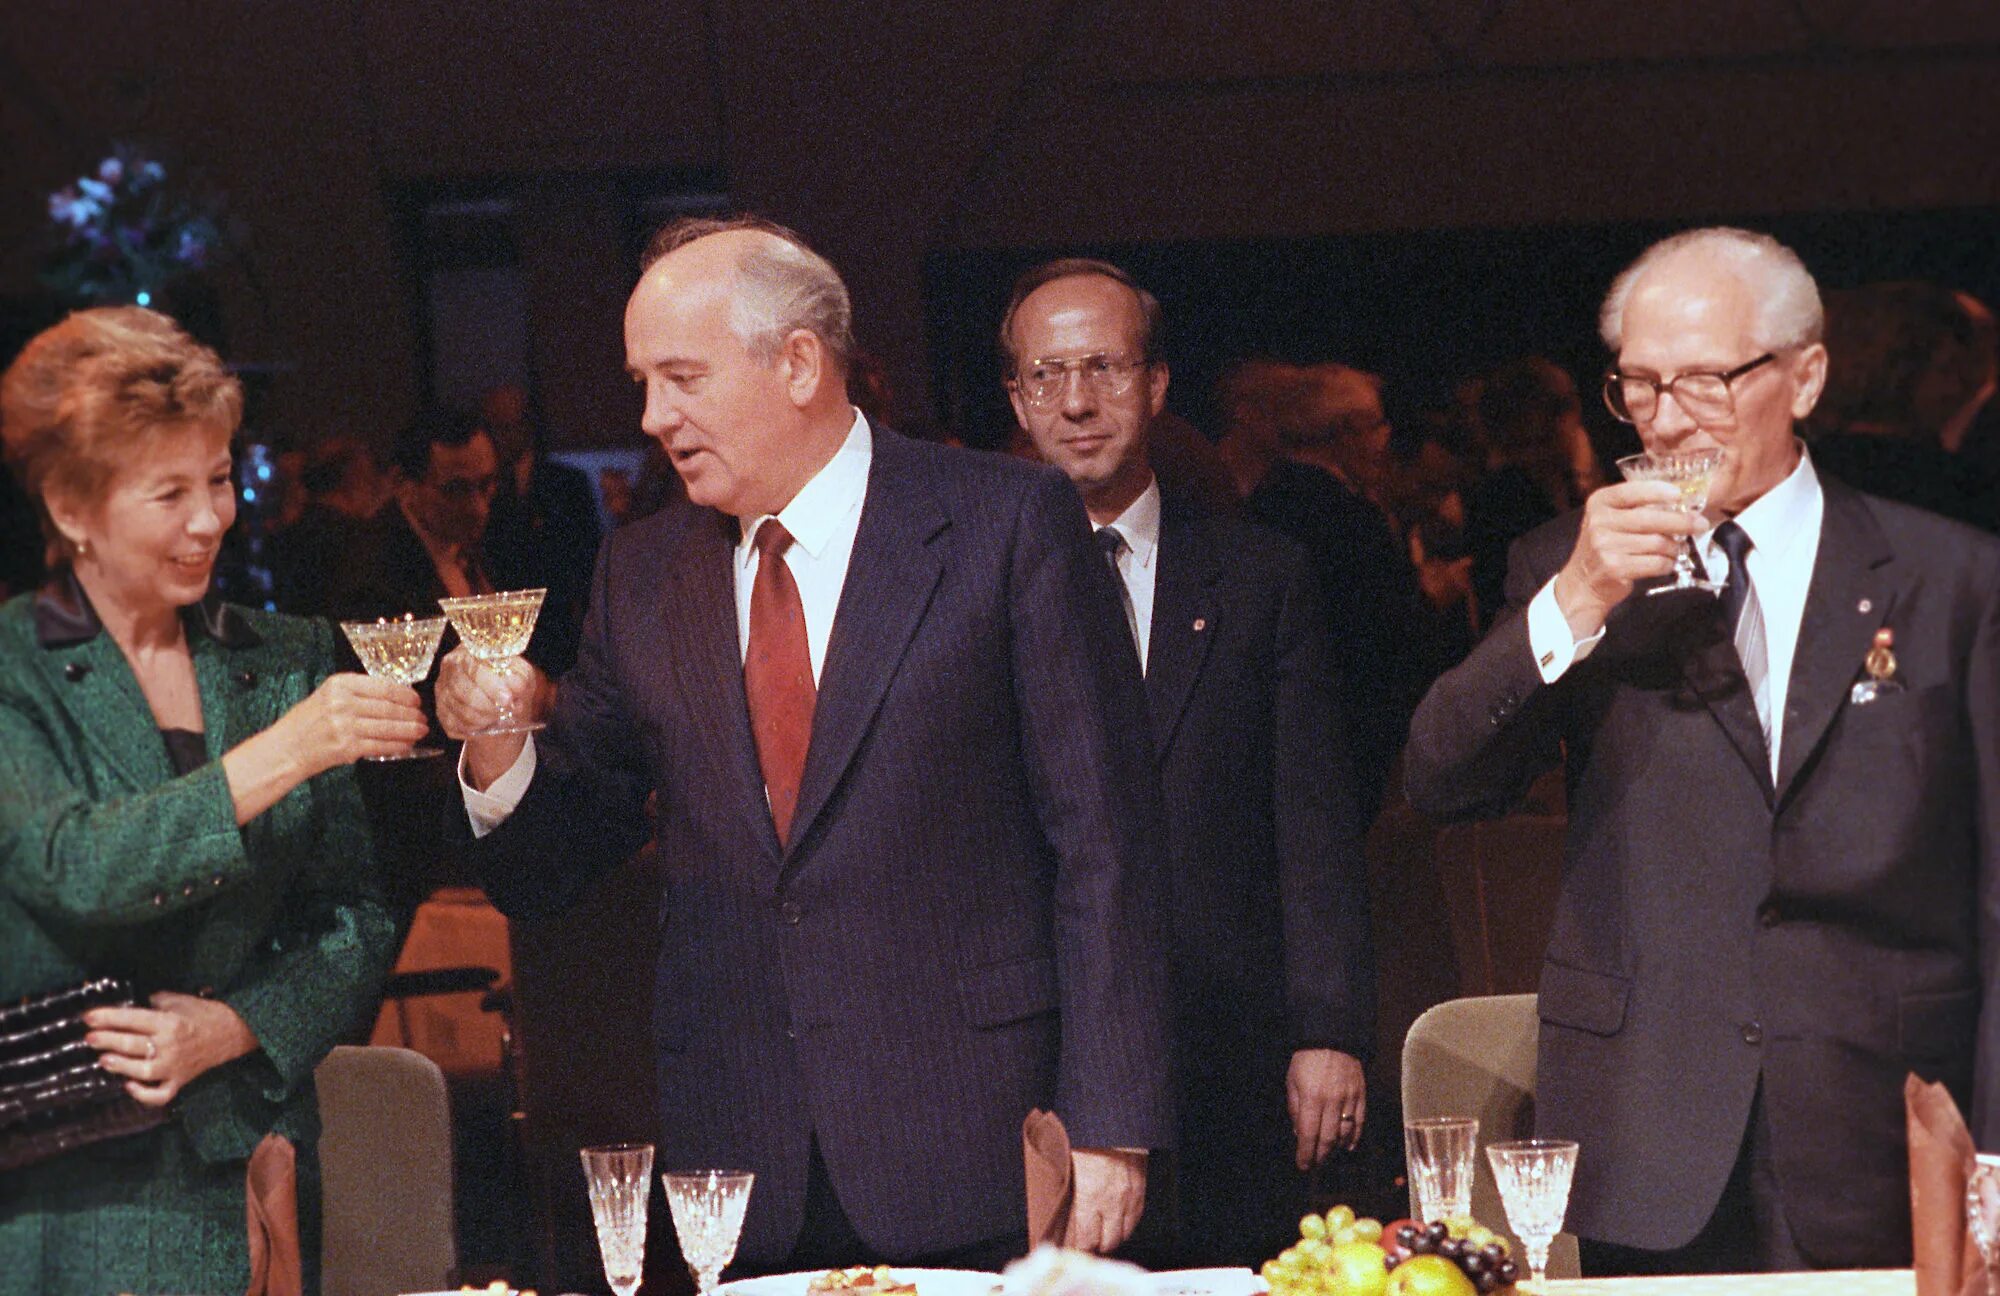 Горбачев в ГДР 1989. Визит Горбачева в ФРГ 1989. Визит м. Горбачева в Берлин 6 октября 1989 г. Визит Горбачева в ГДР 1989.